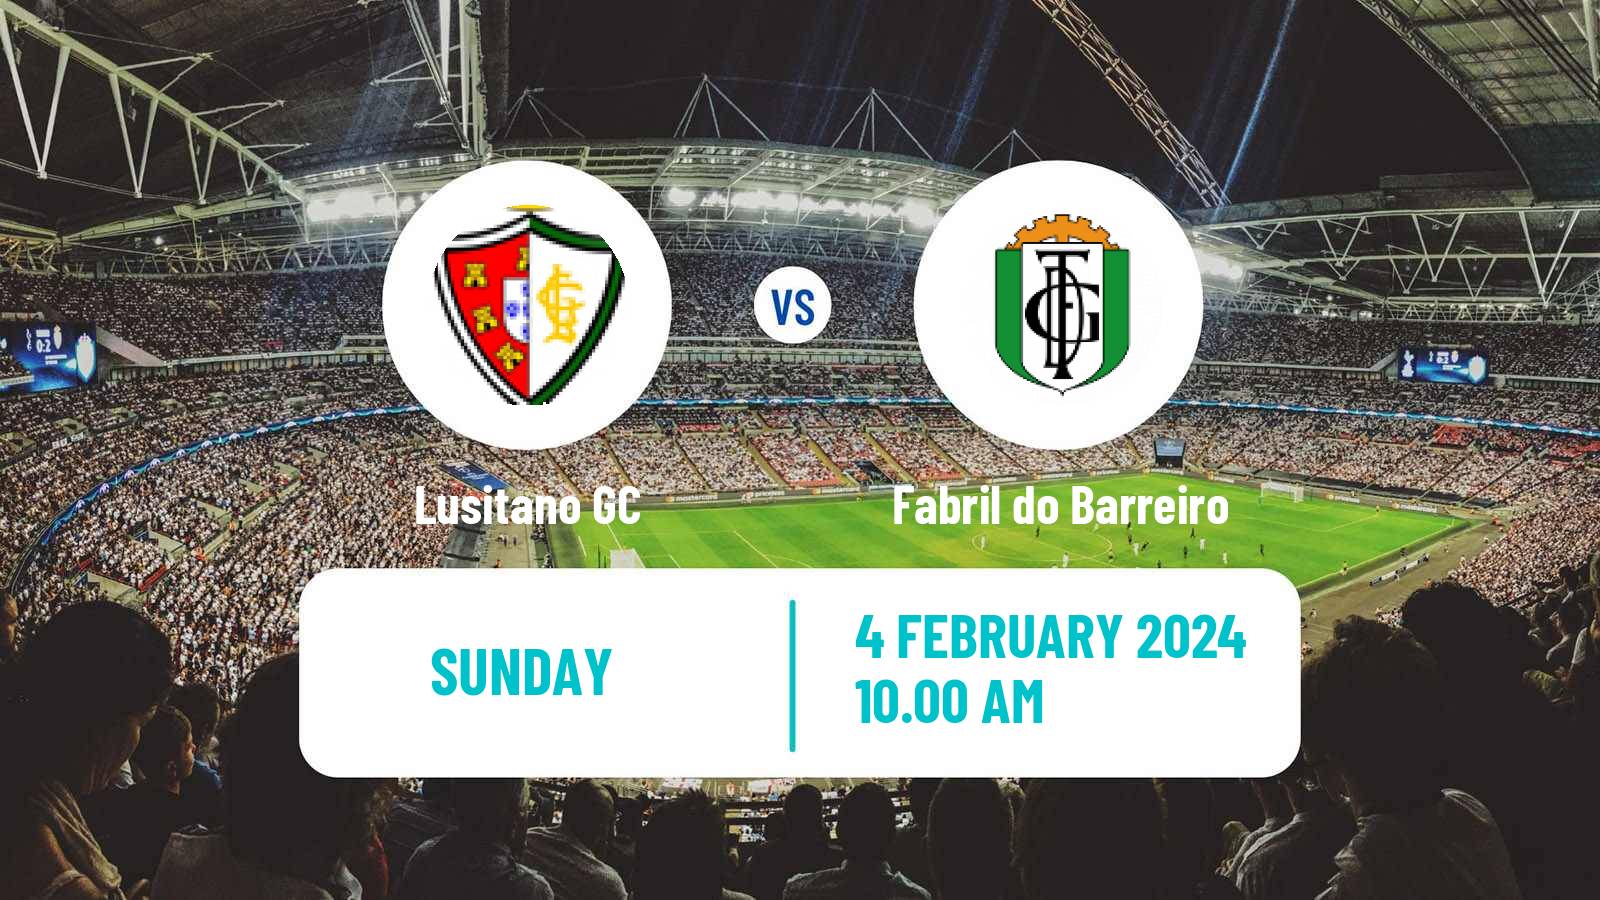 Soccer Campeonato de Portugal - Group D Lusitano GC - Fabril do Barreiro